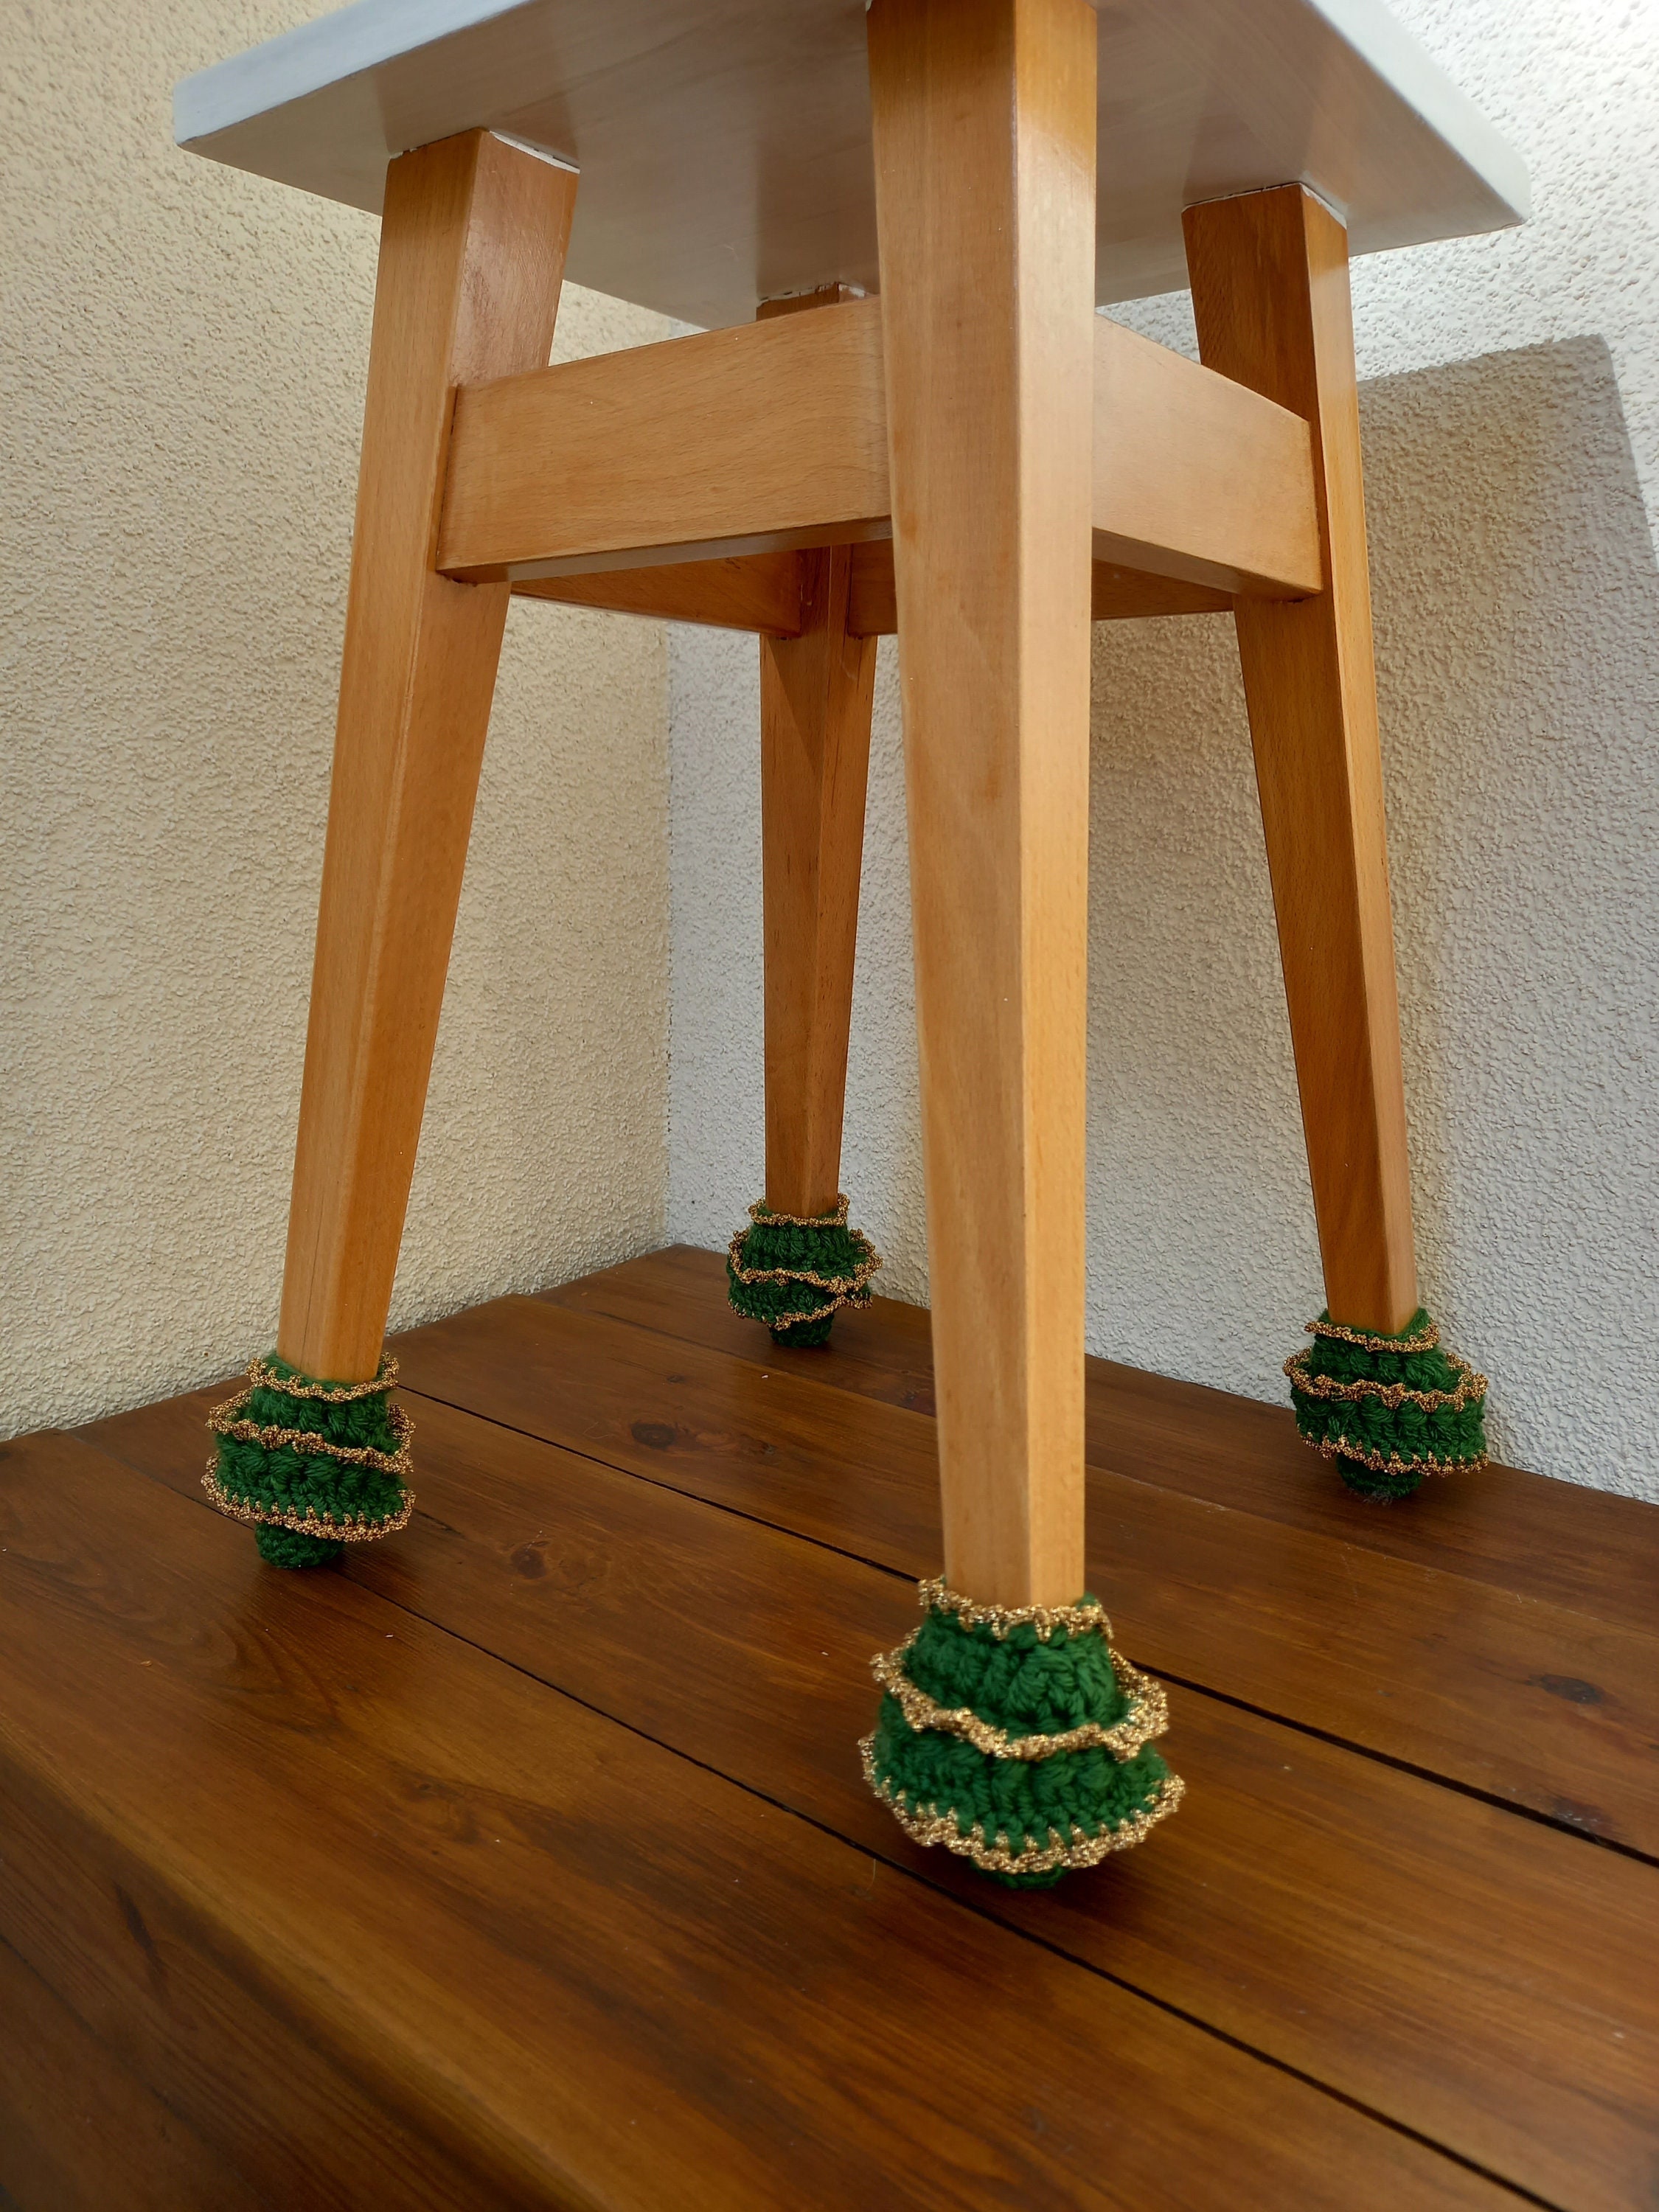 Verknald Prestatie ethisch Gezellige sokken voor stoel kerstboom kerststoel benen - Etsy België